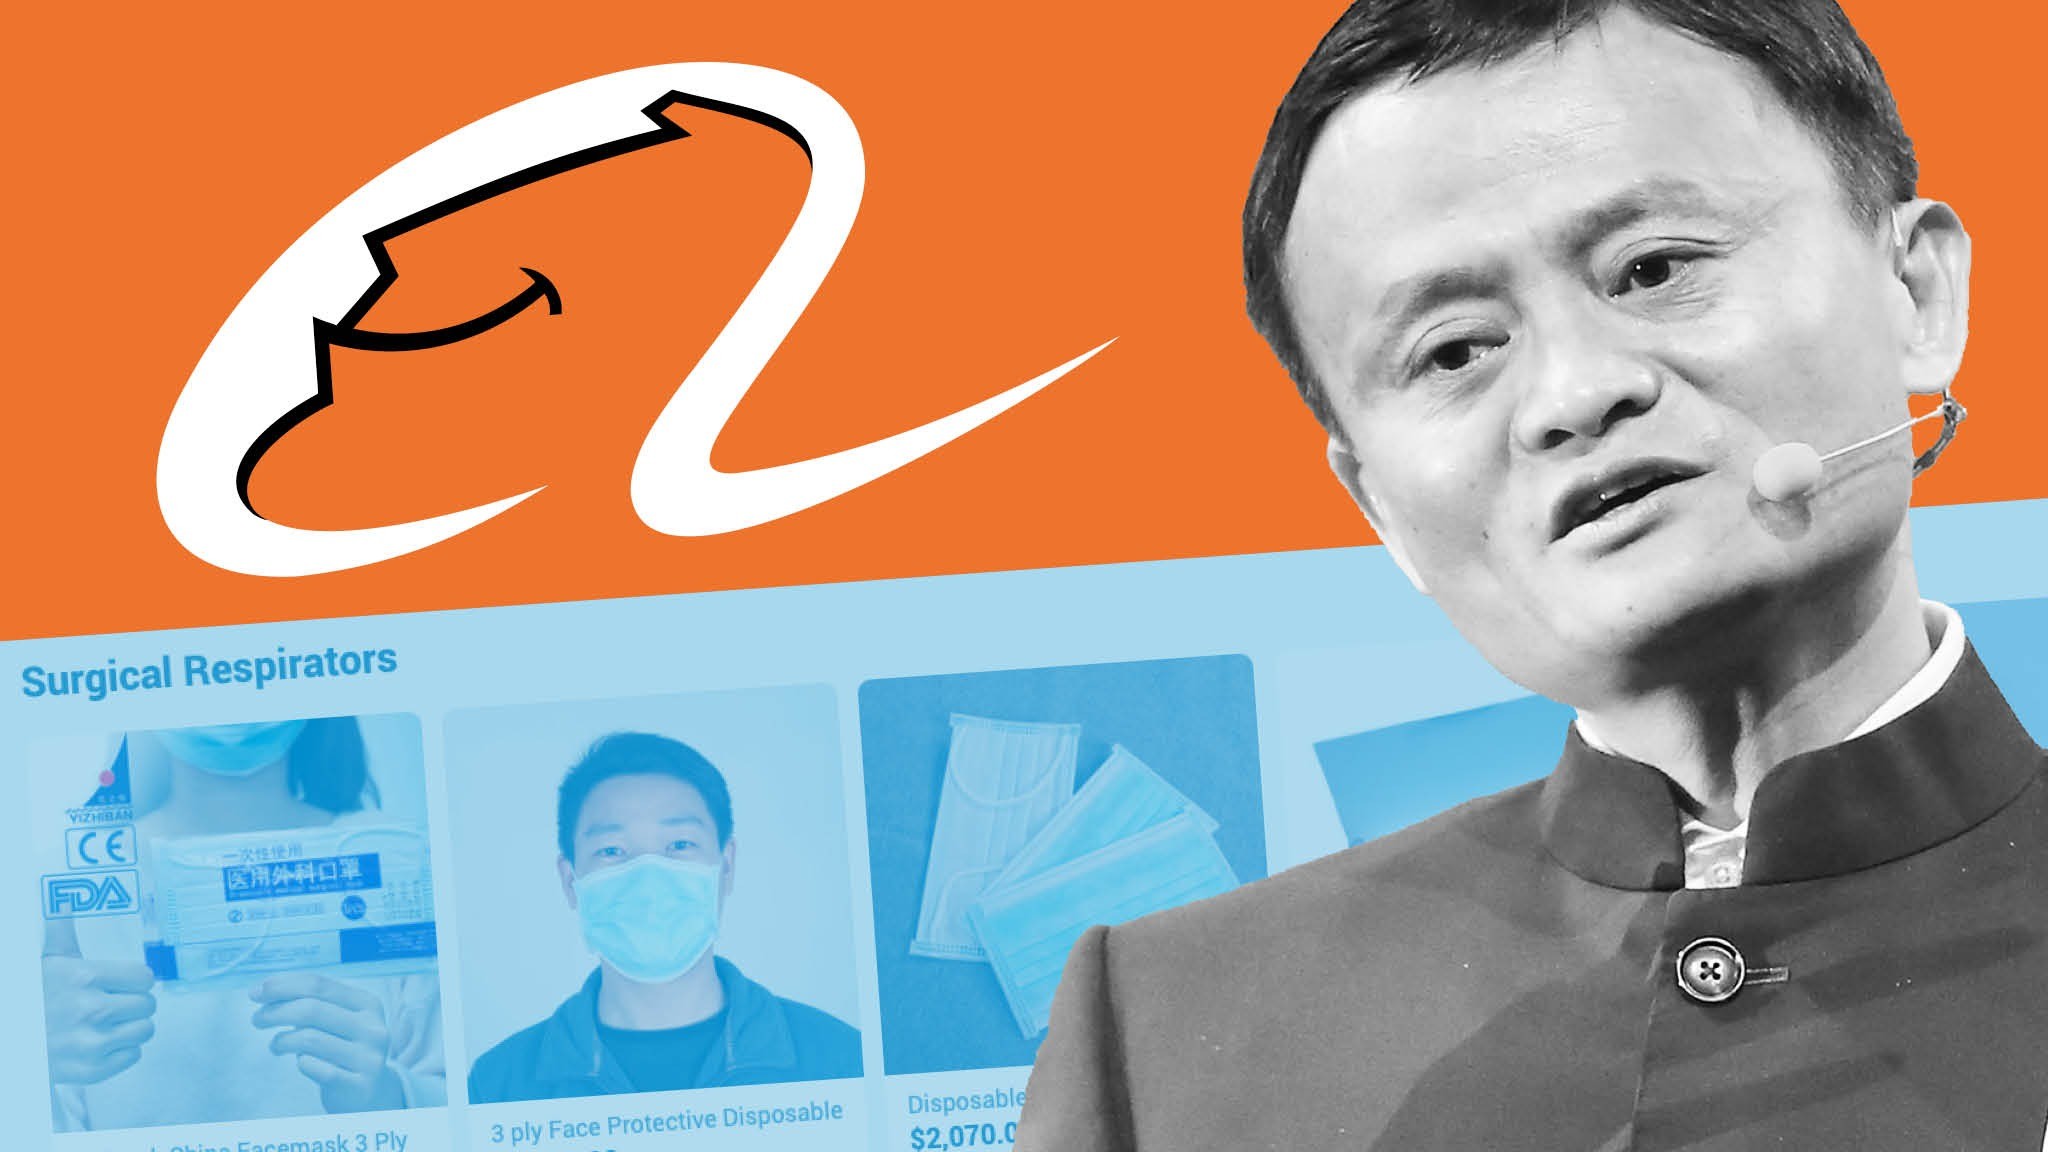 
Dù thế nào đi chăng nữa, chỉ một tuyên bố đã khiến chính quyền Bắc Kinh chú ý, ngay lập tức đã có những động thái nhắm vào Jack Ma và Alibaba
